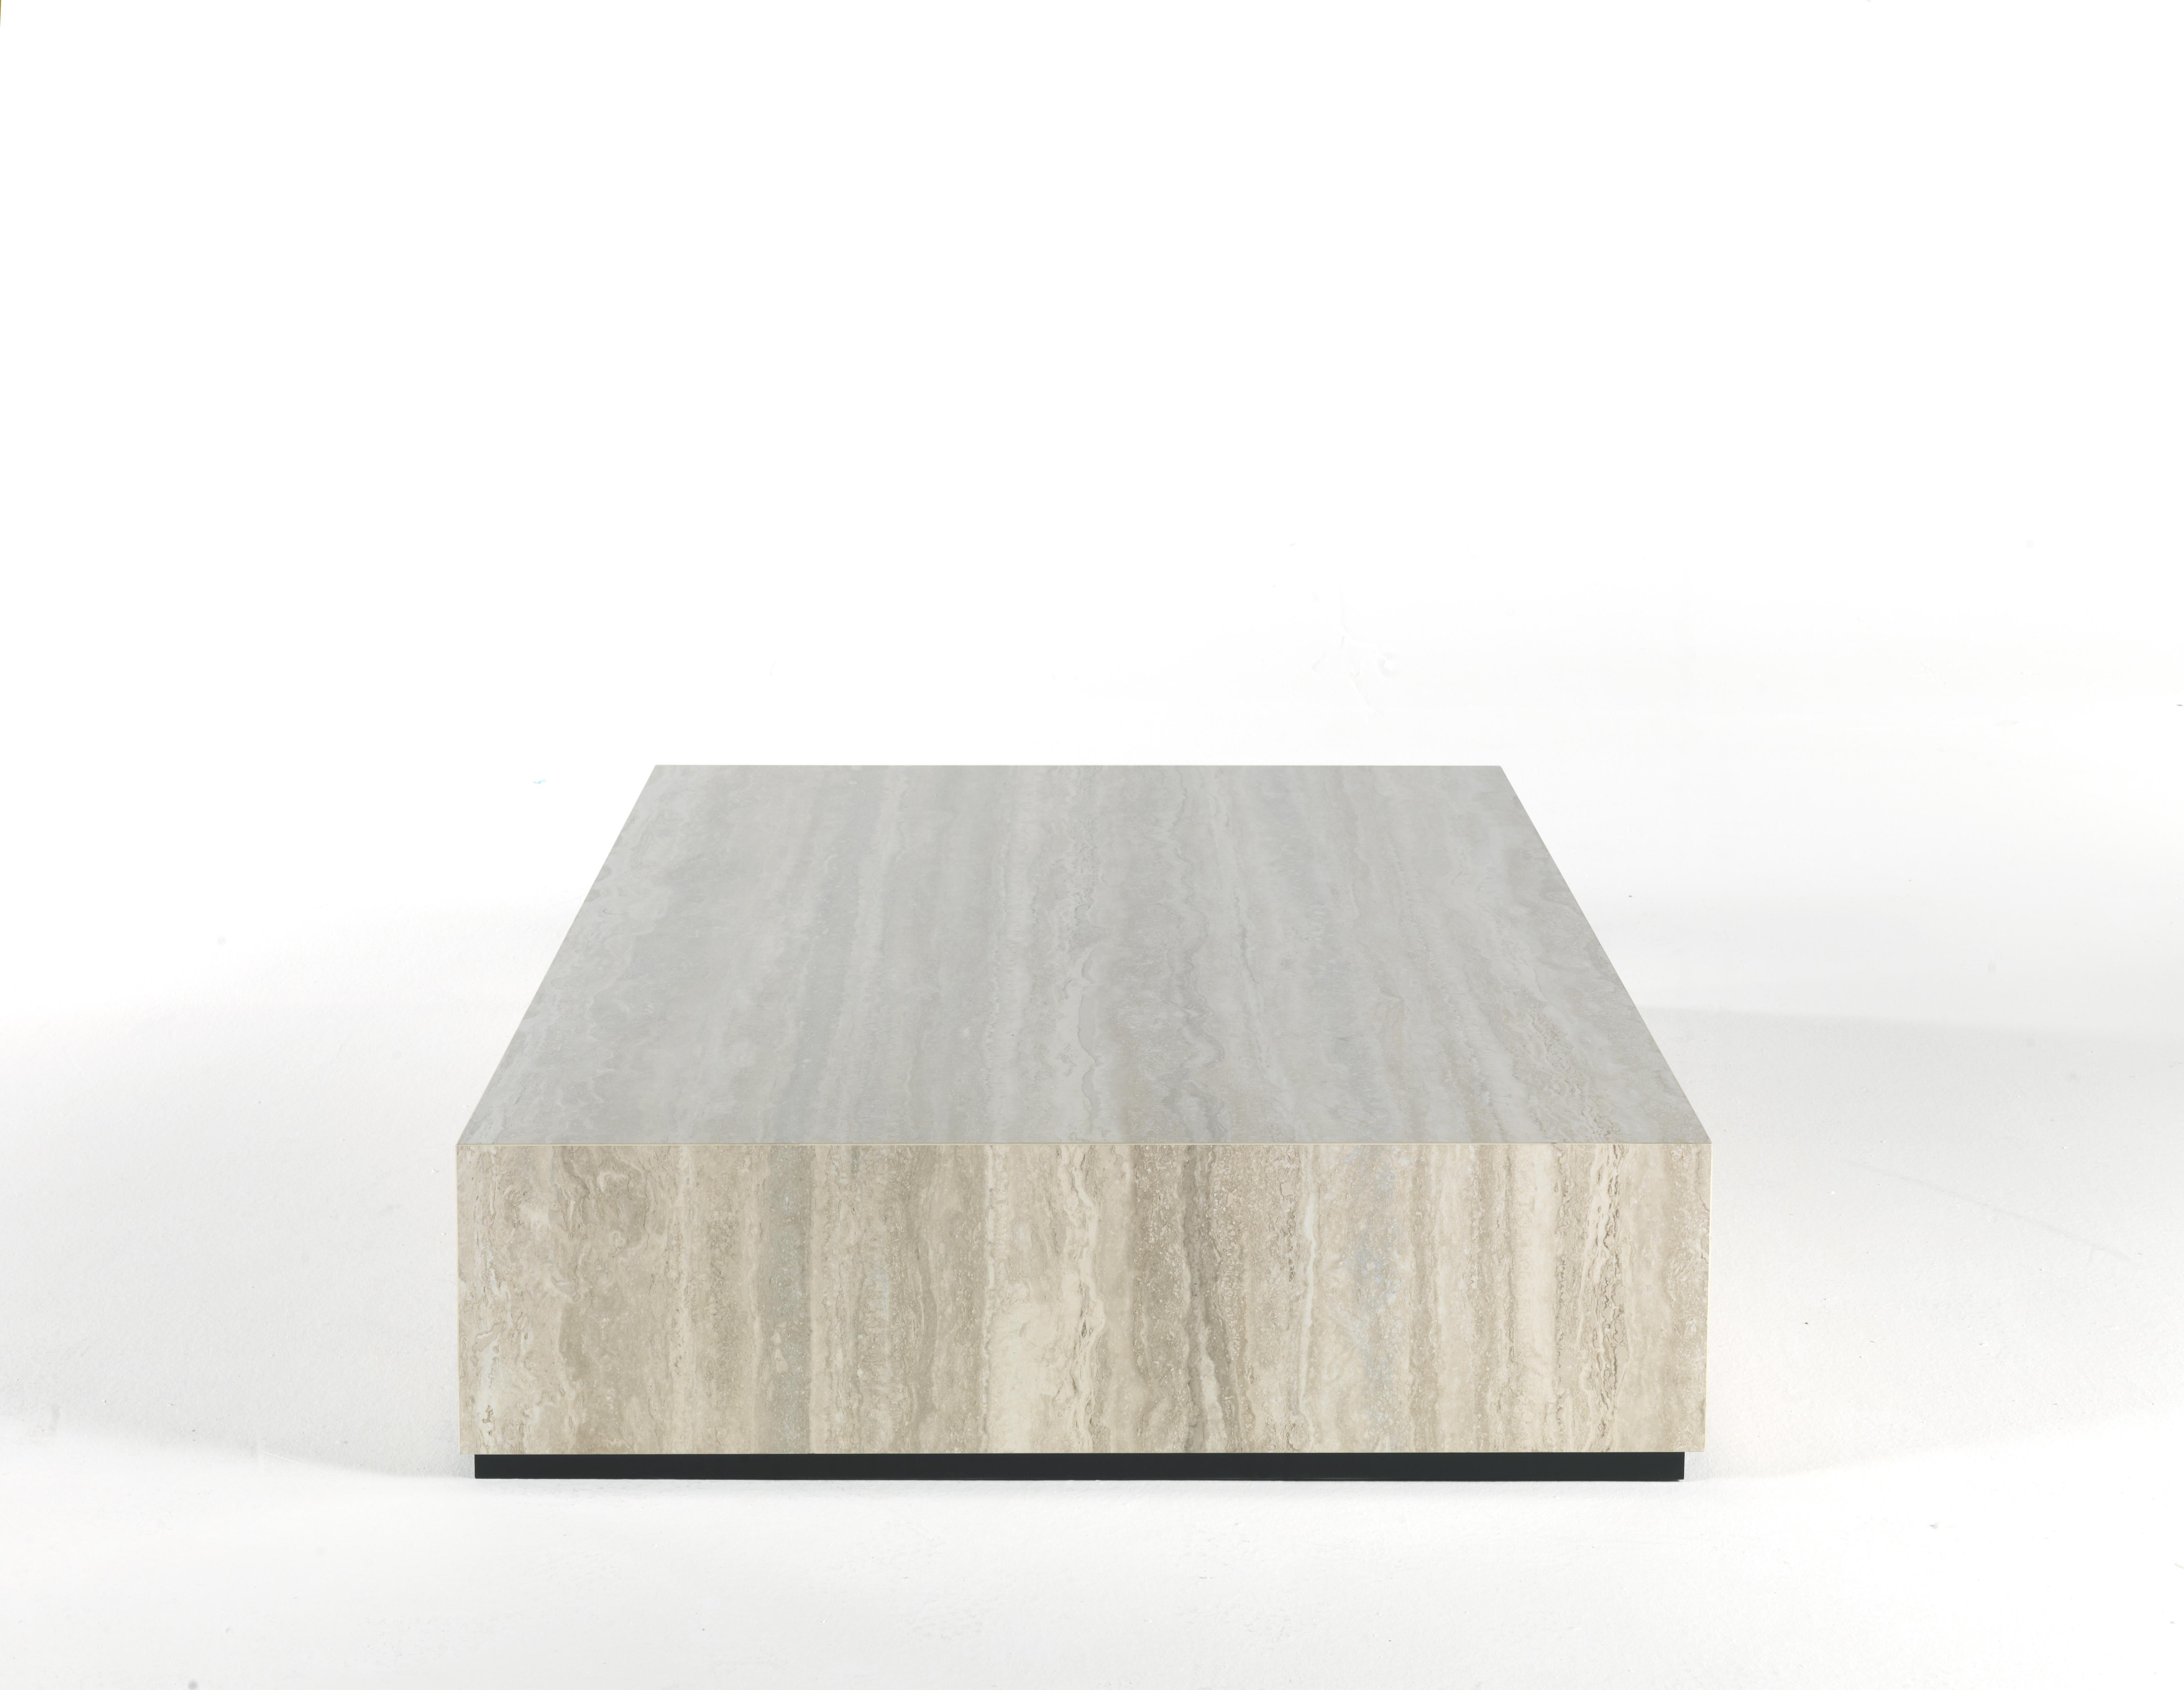 Der in einem Winkel von 45 Grad montierte Travertin-Tisch Flair mit seinen geometrischen Linien ist eine raffinierte Ergänzung, die jeder Umgebung einen zeitgenössischen Reiz verleiht.
Flair Central Tisch mit Struktur aus Holz, verkleidet mit